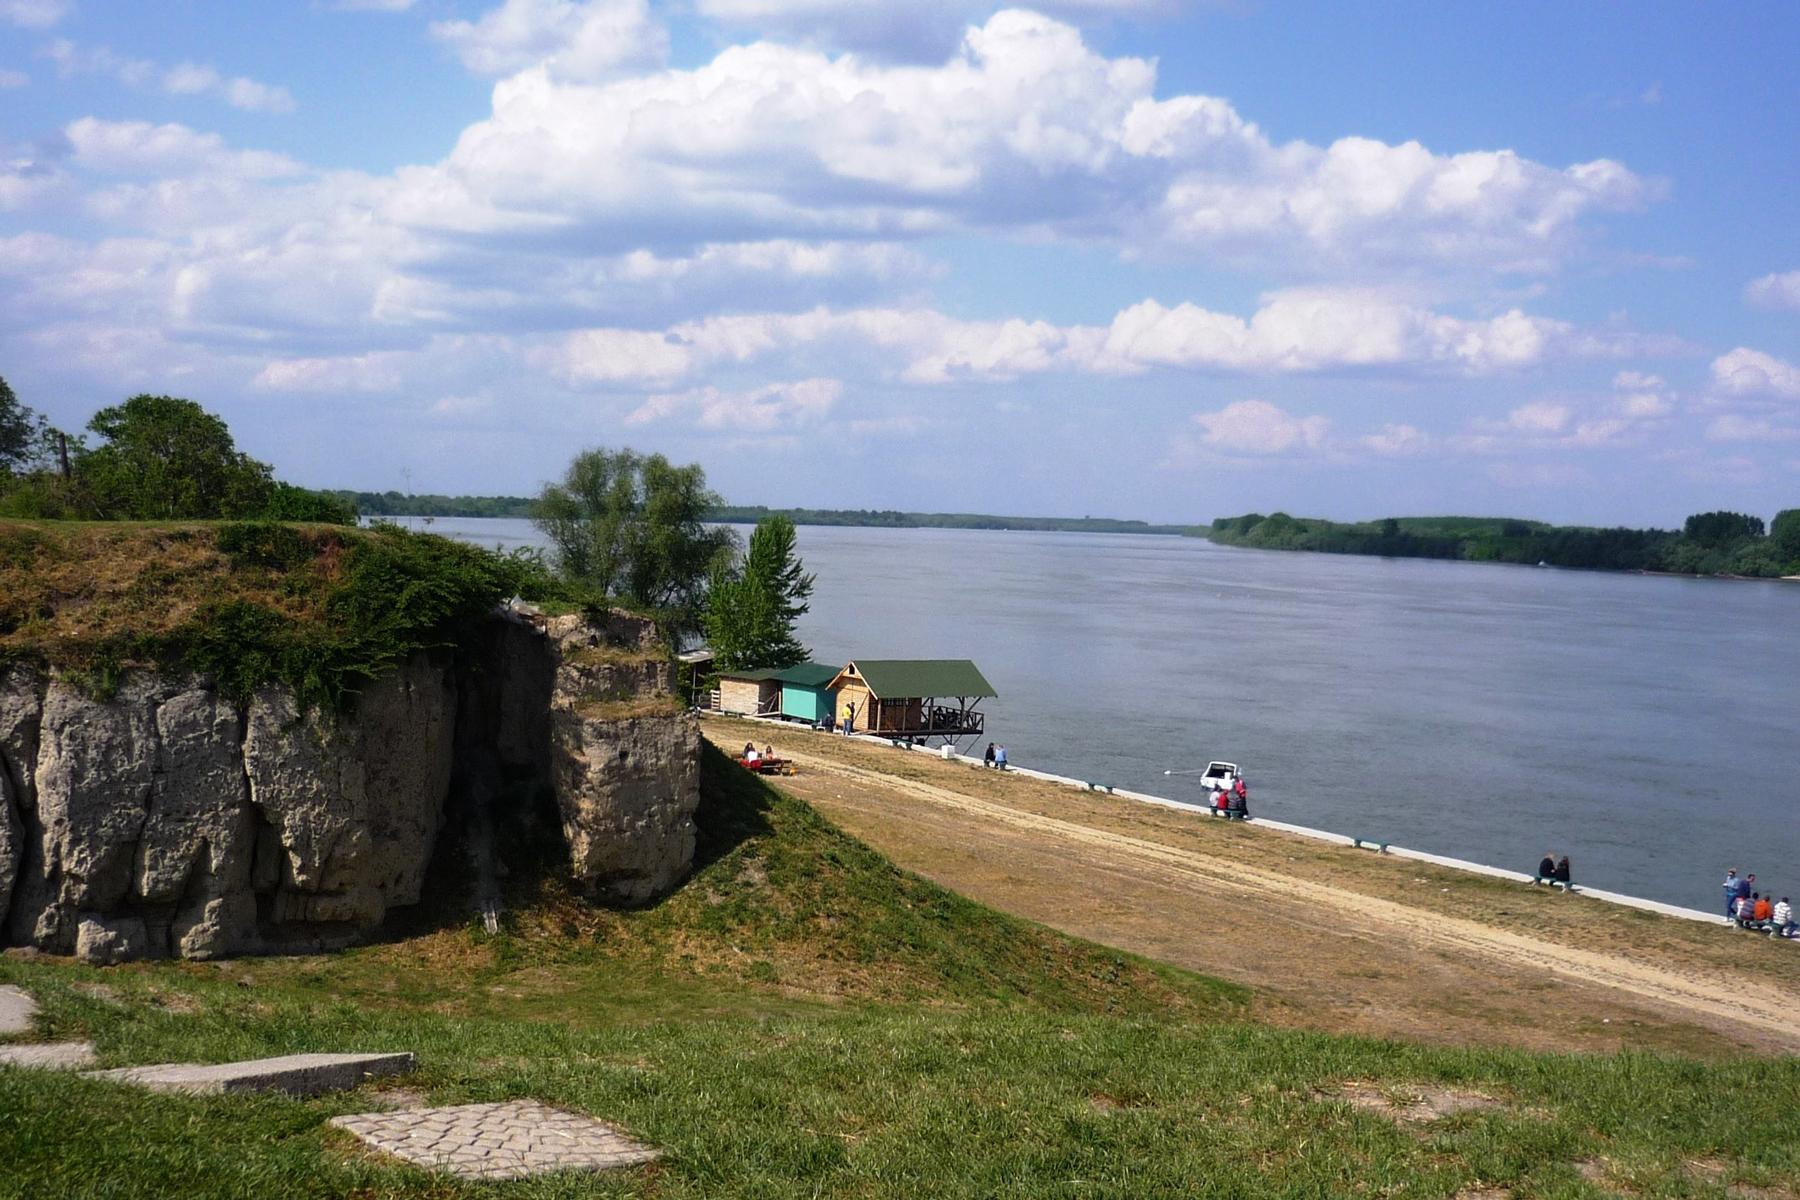 Reka Dunav u svojoj punoj lepoti.